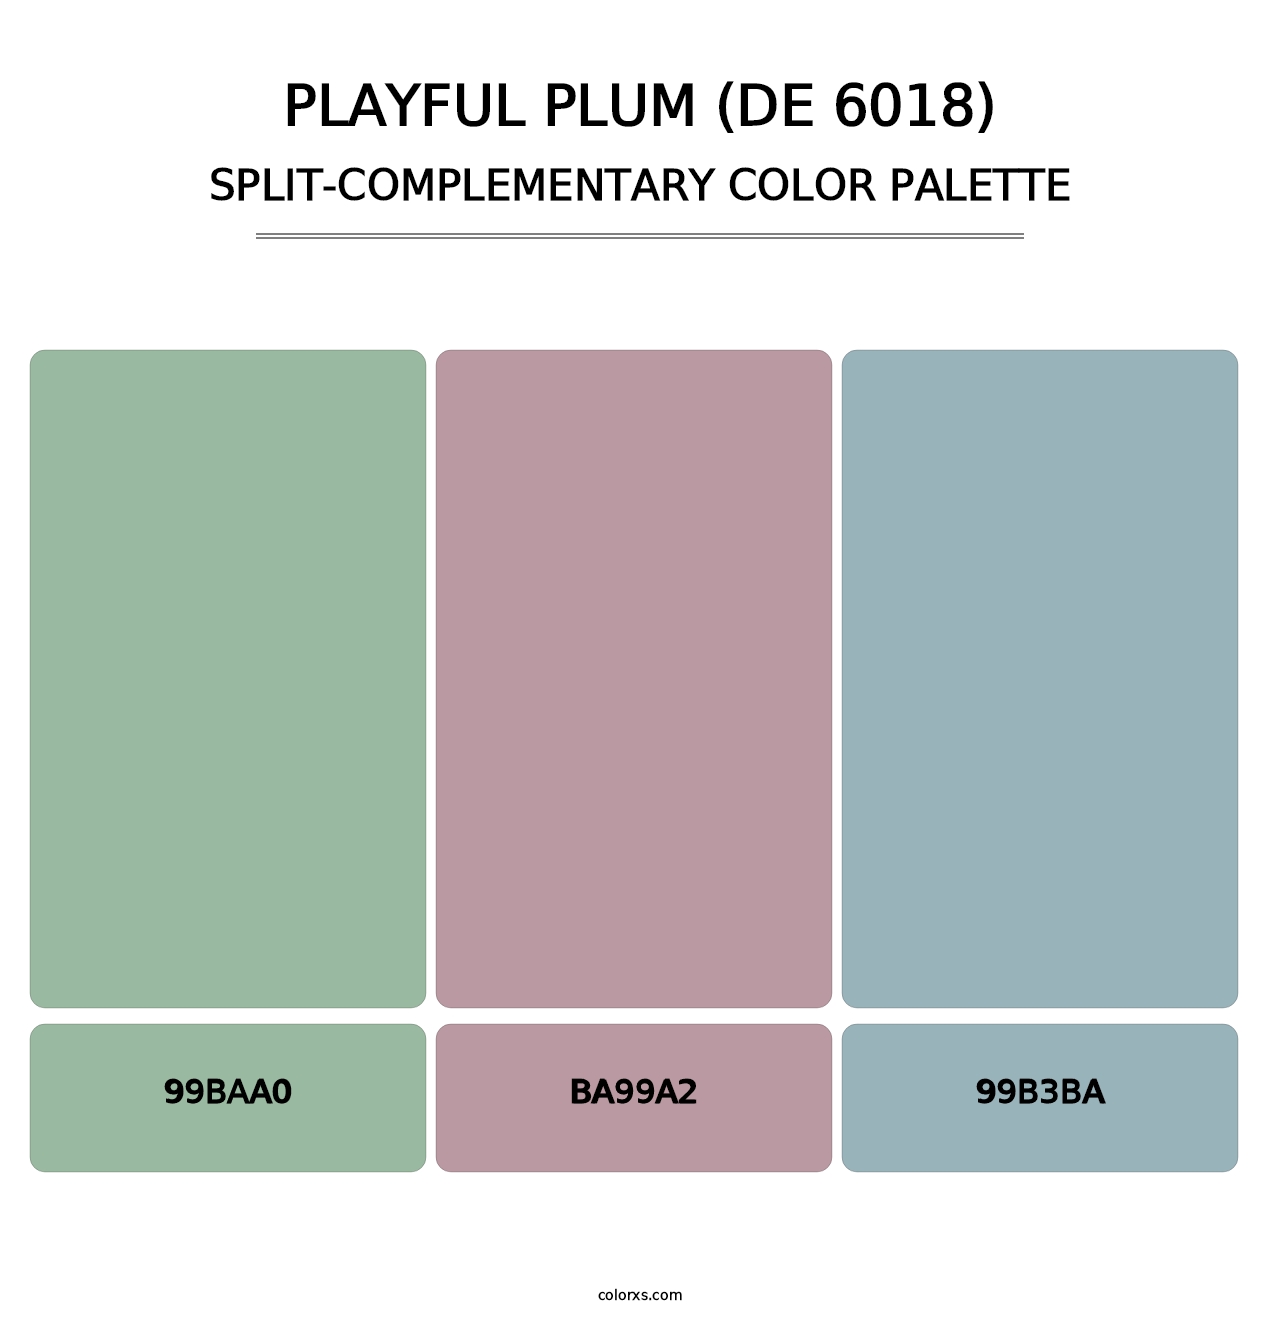 Playful Plum (DE 6018) - Split-Complementary Color Palette